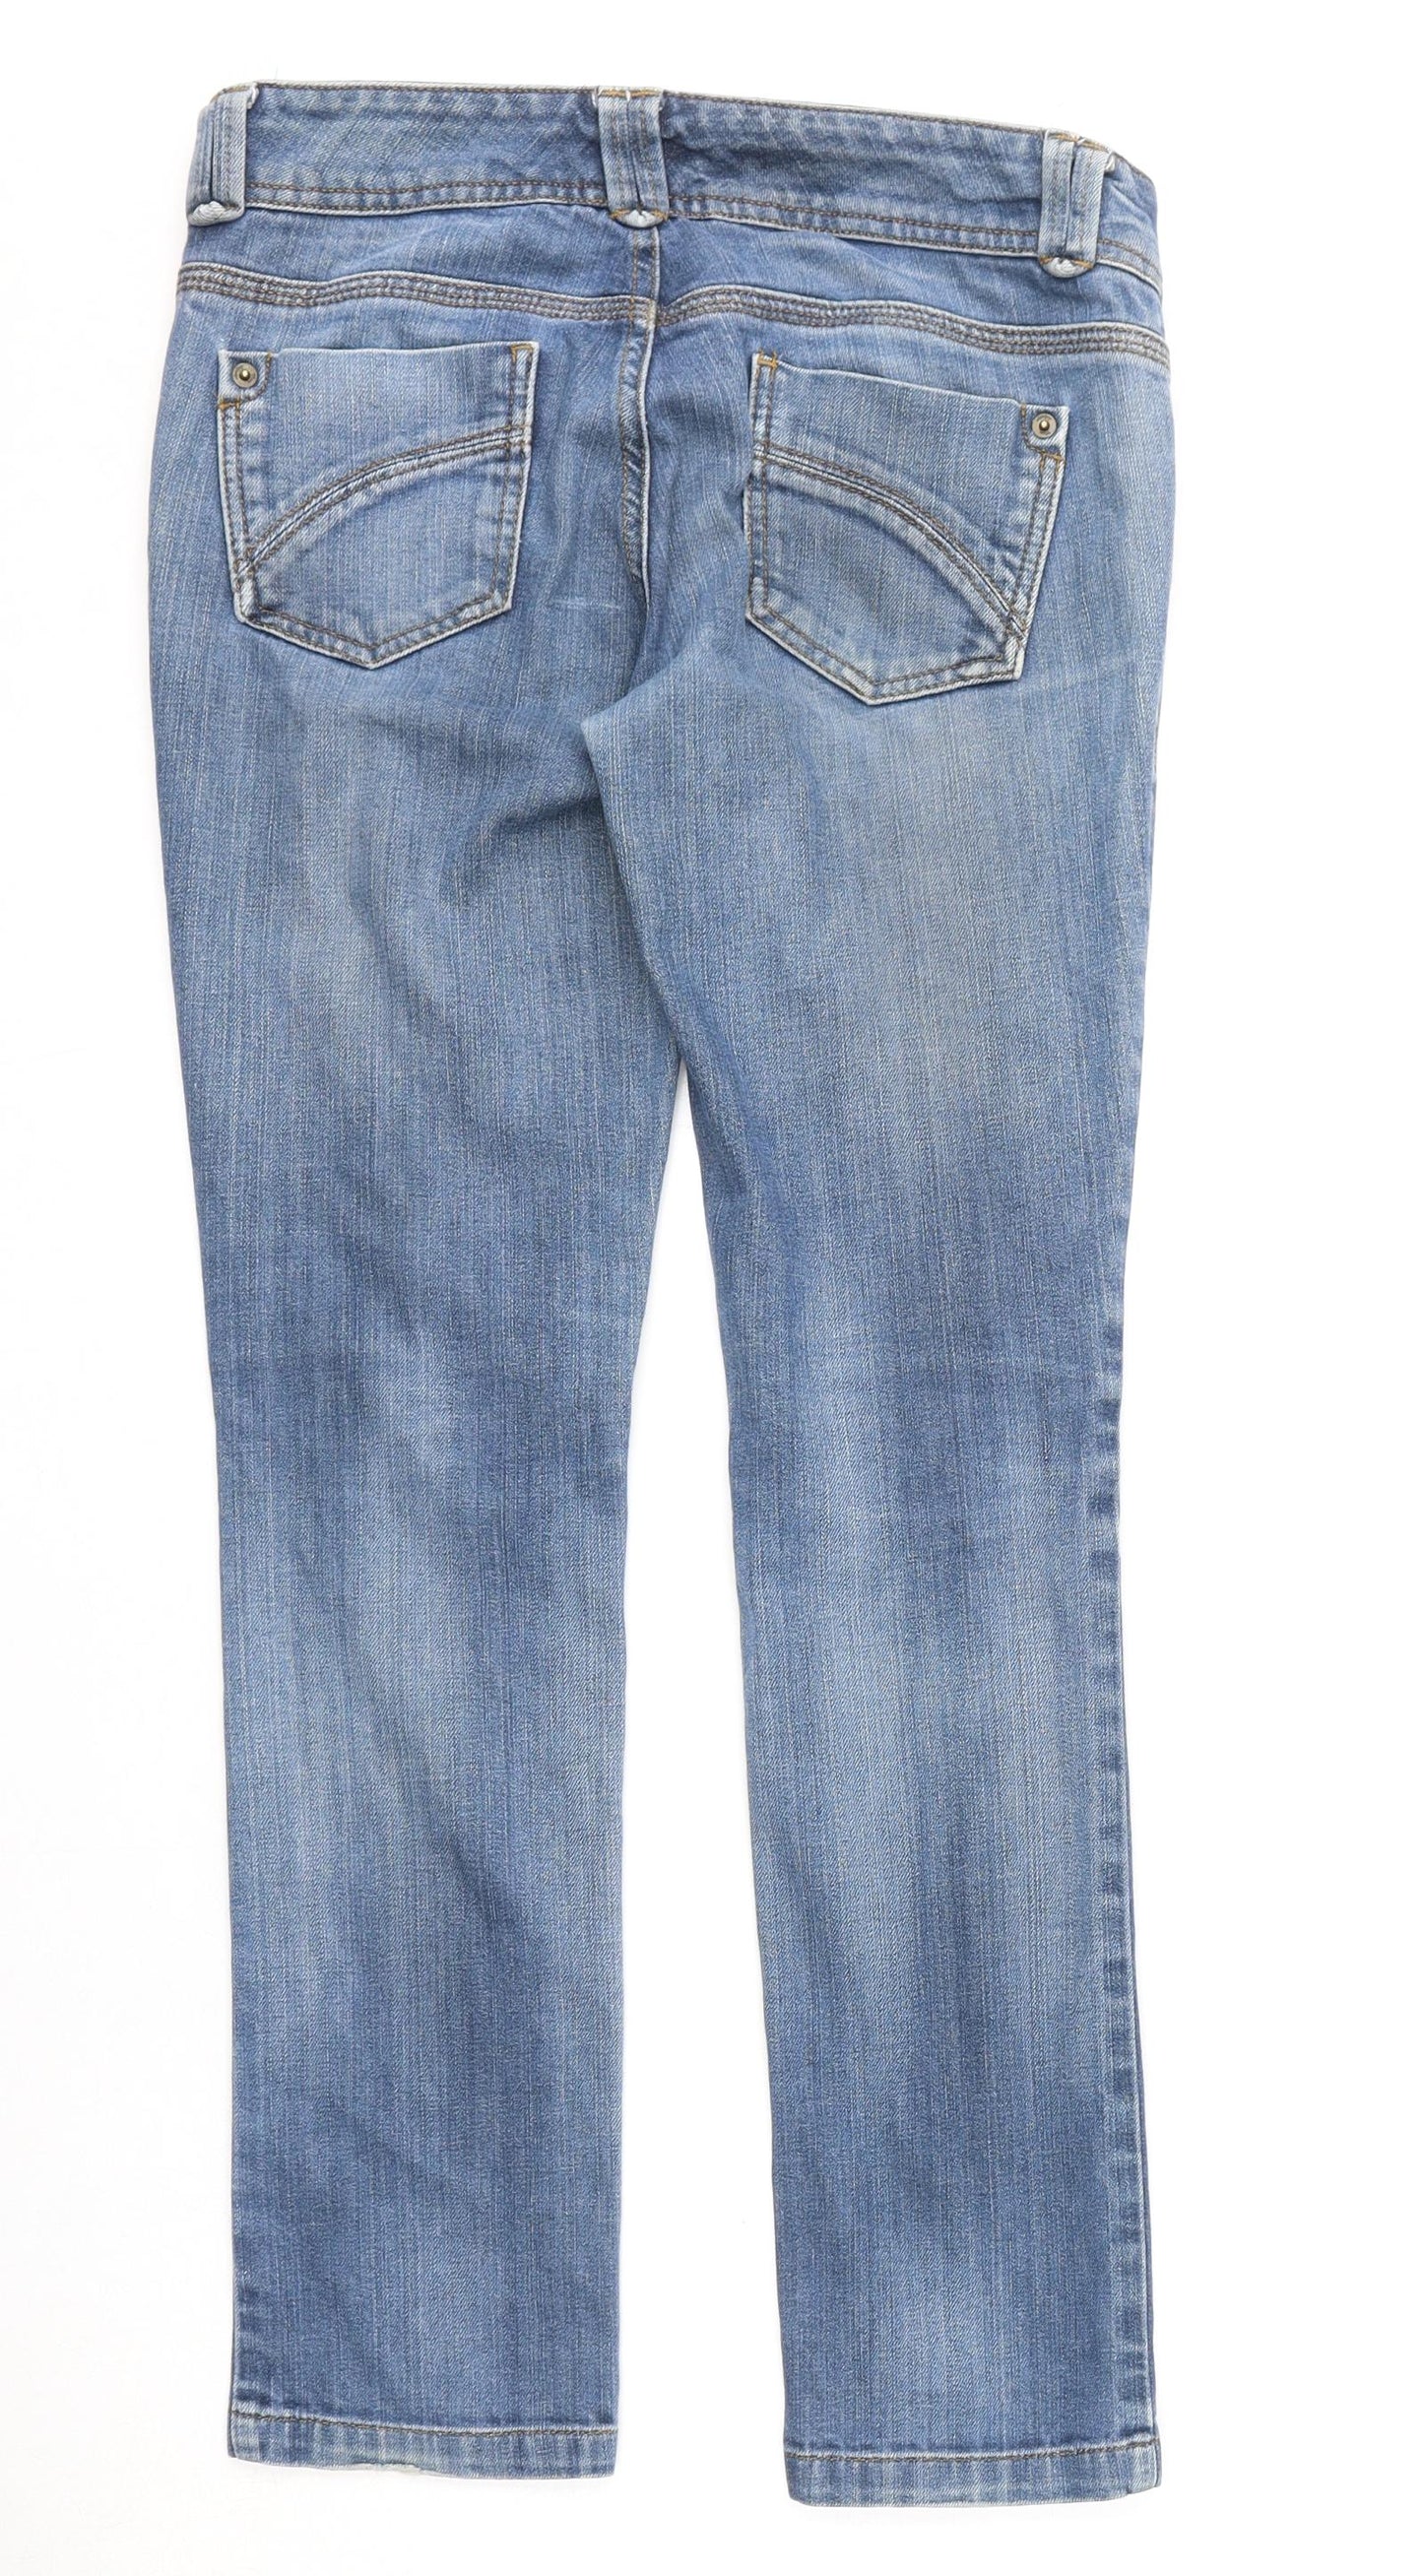 Miss Selfridge Womens Blue Cotton Skinny Jeans Size 10 L29 in Regular Zip